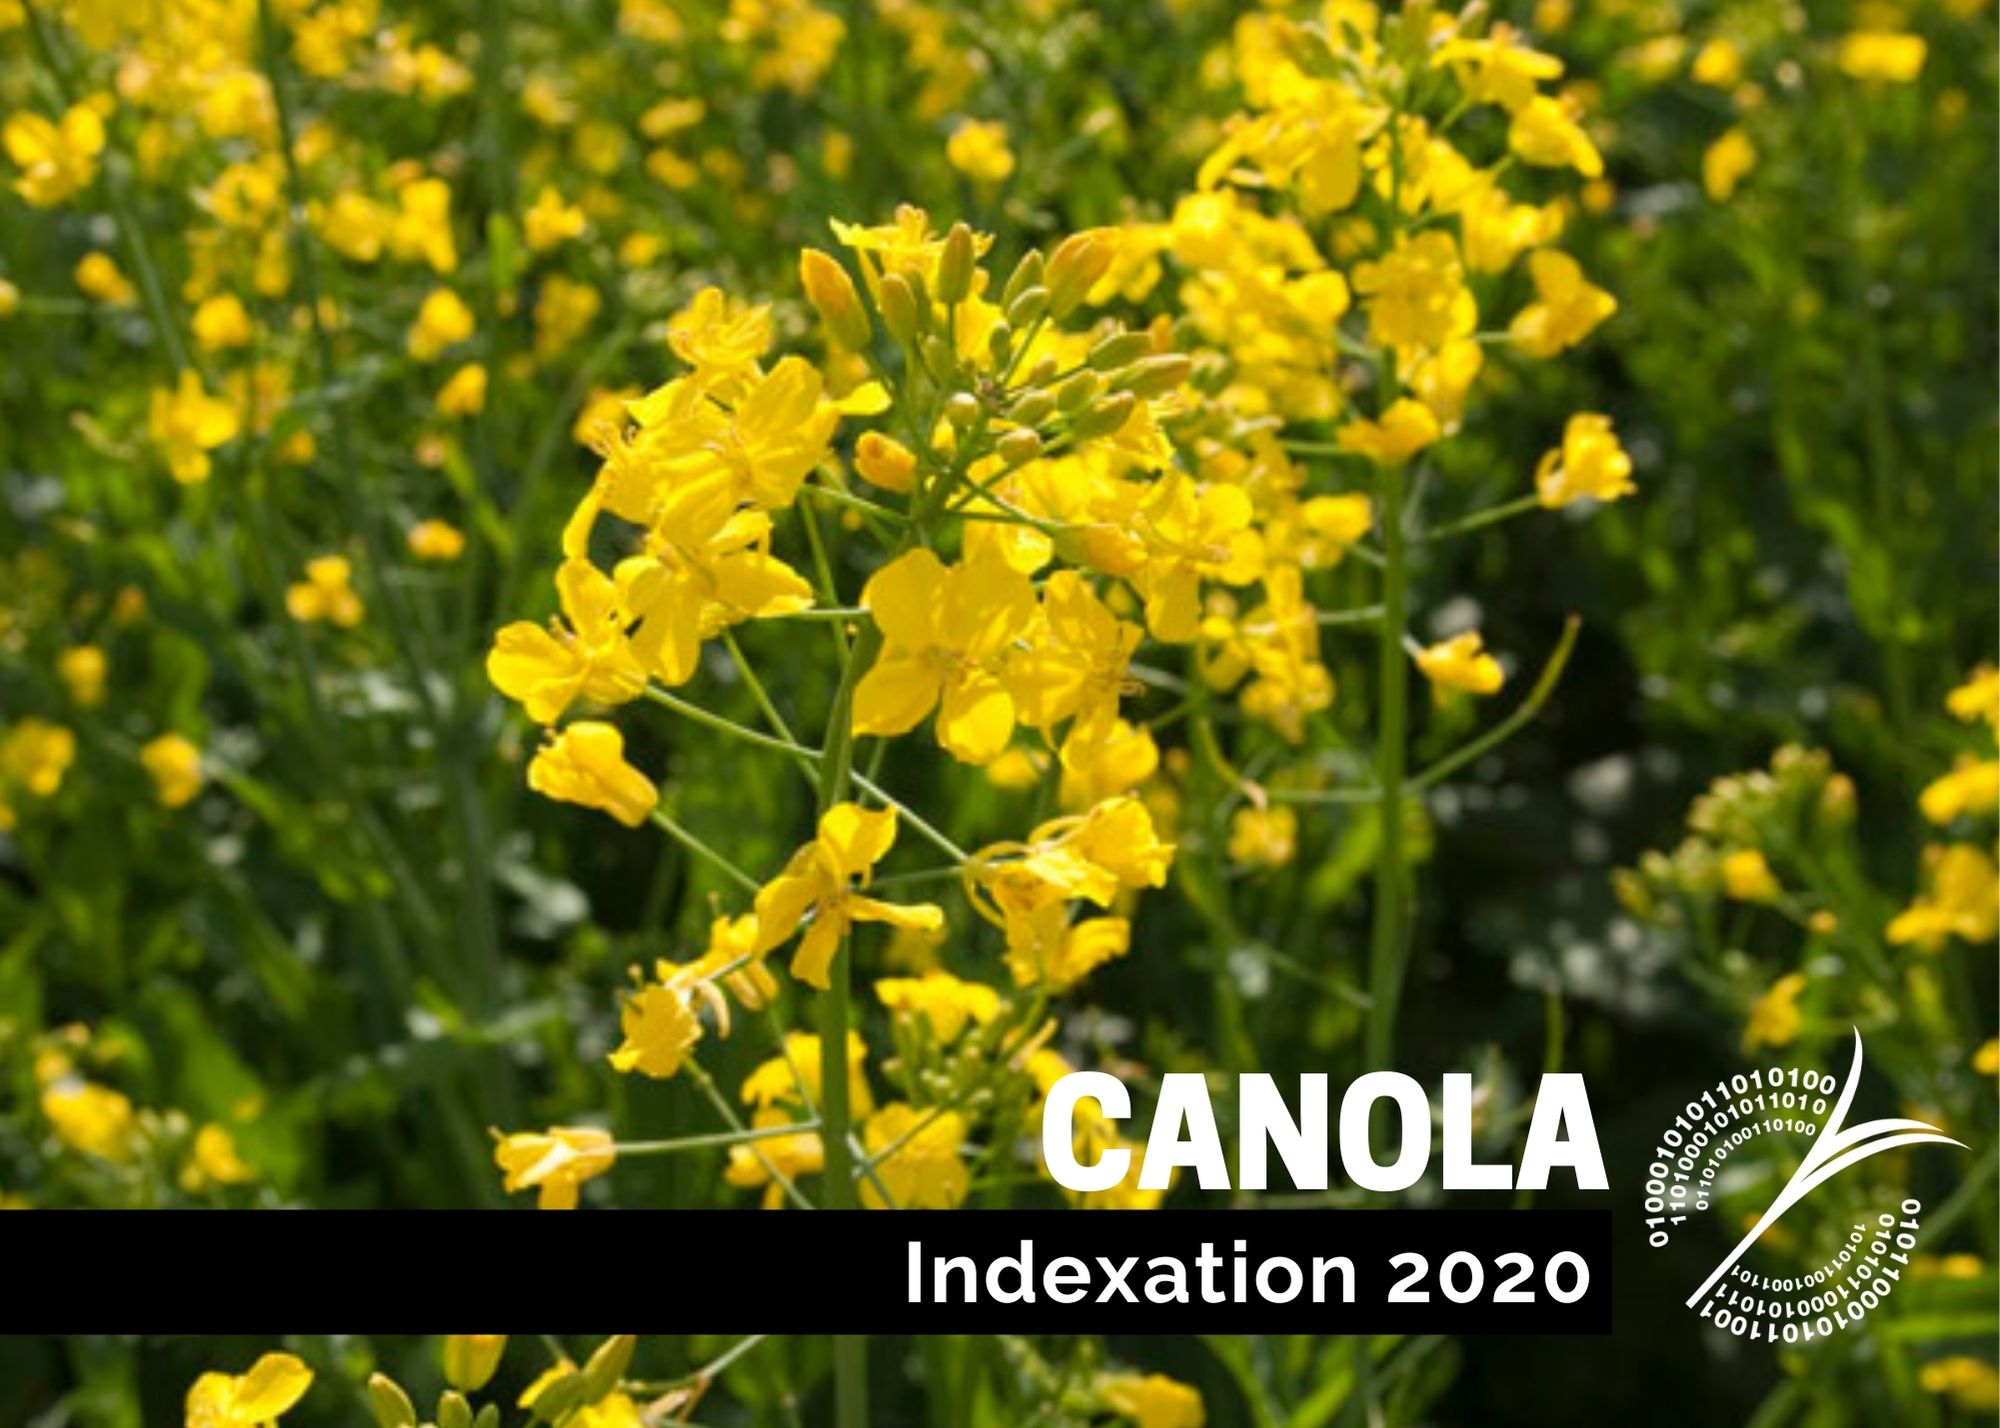 étude : Indexation 2020 - Canola